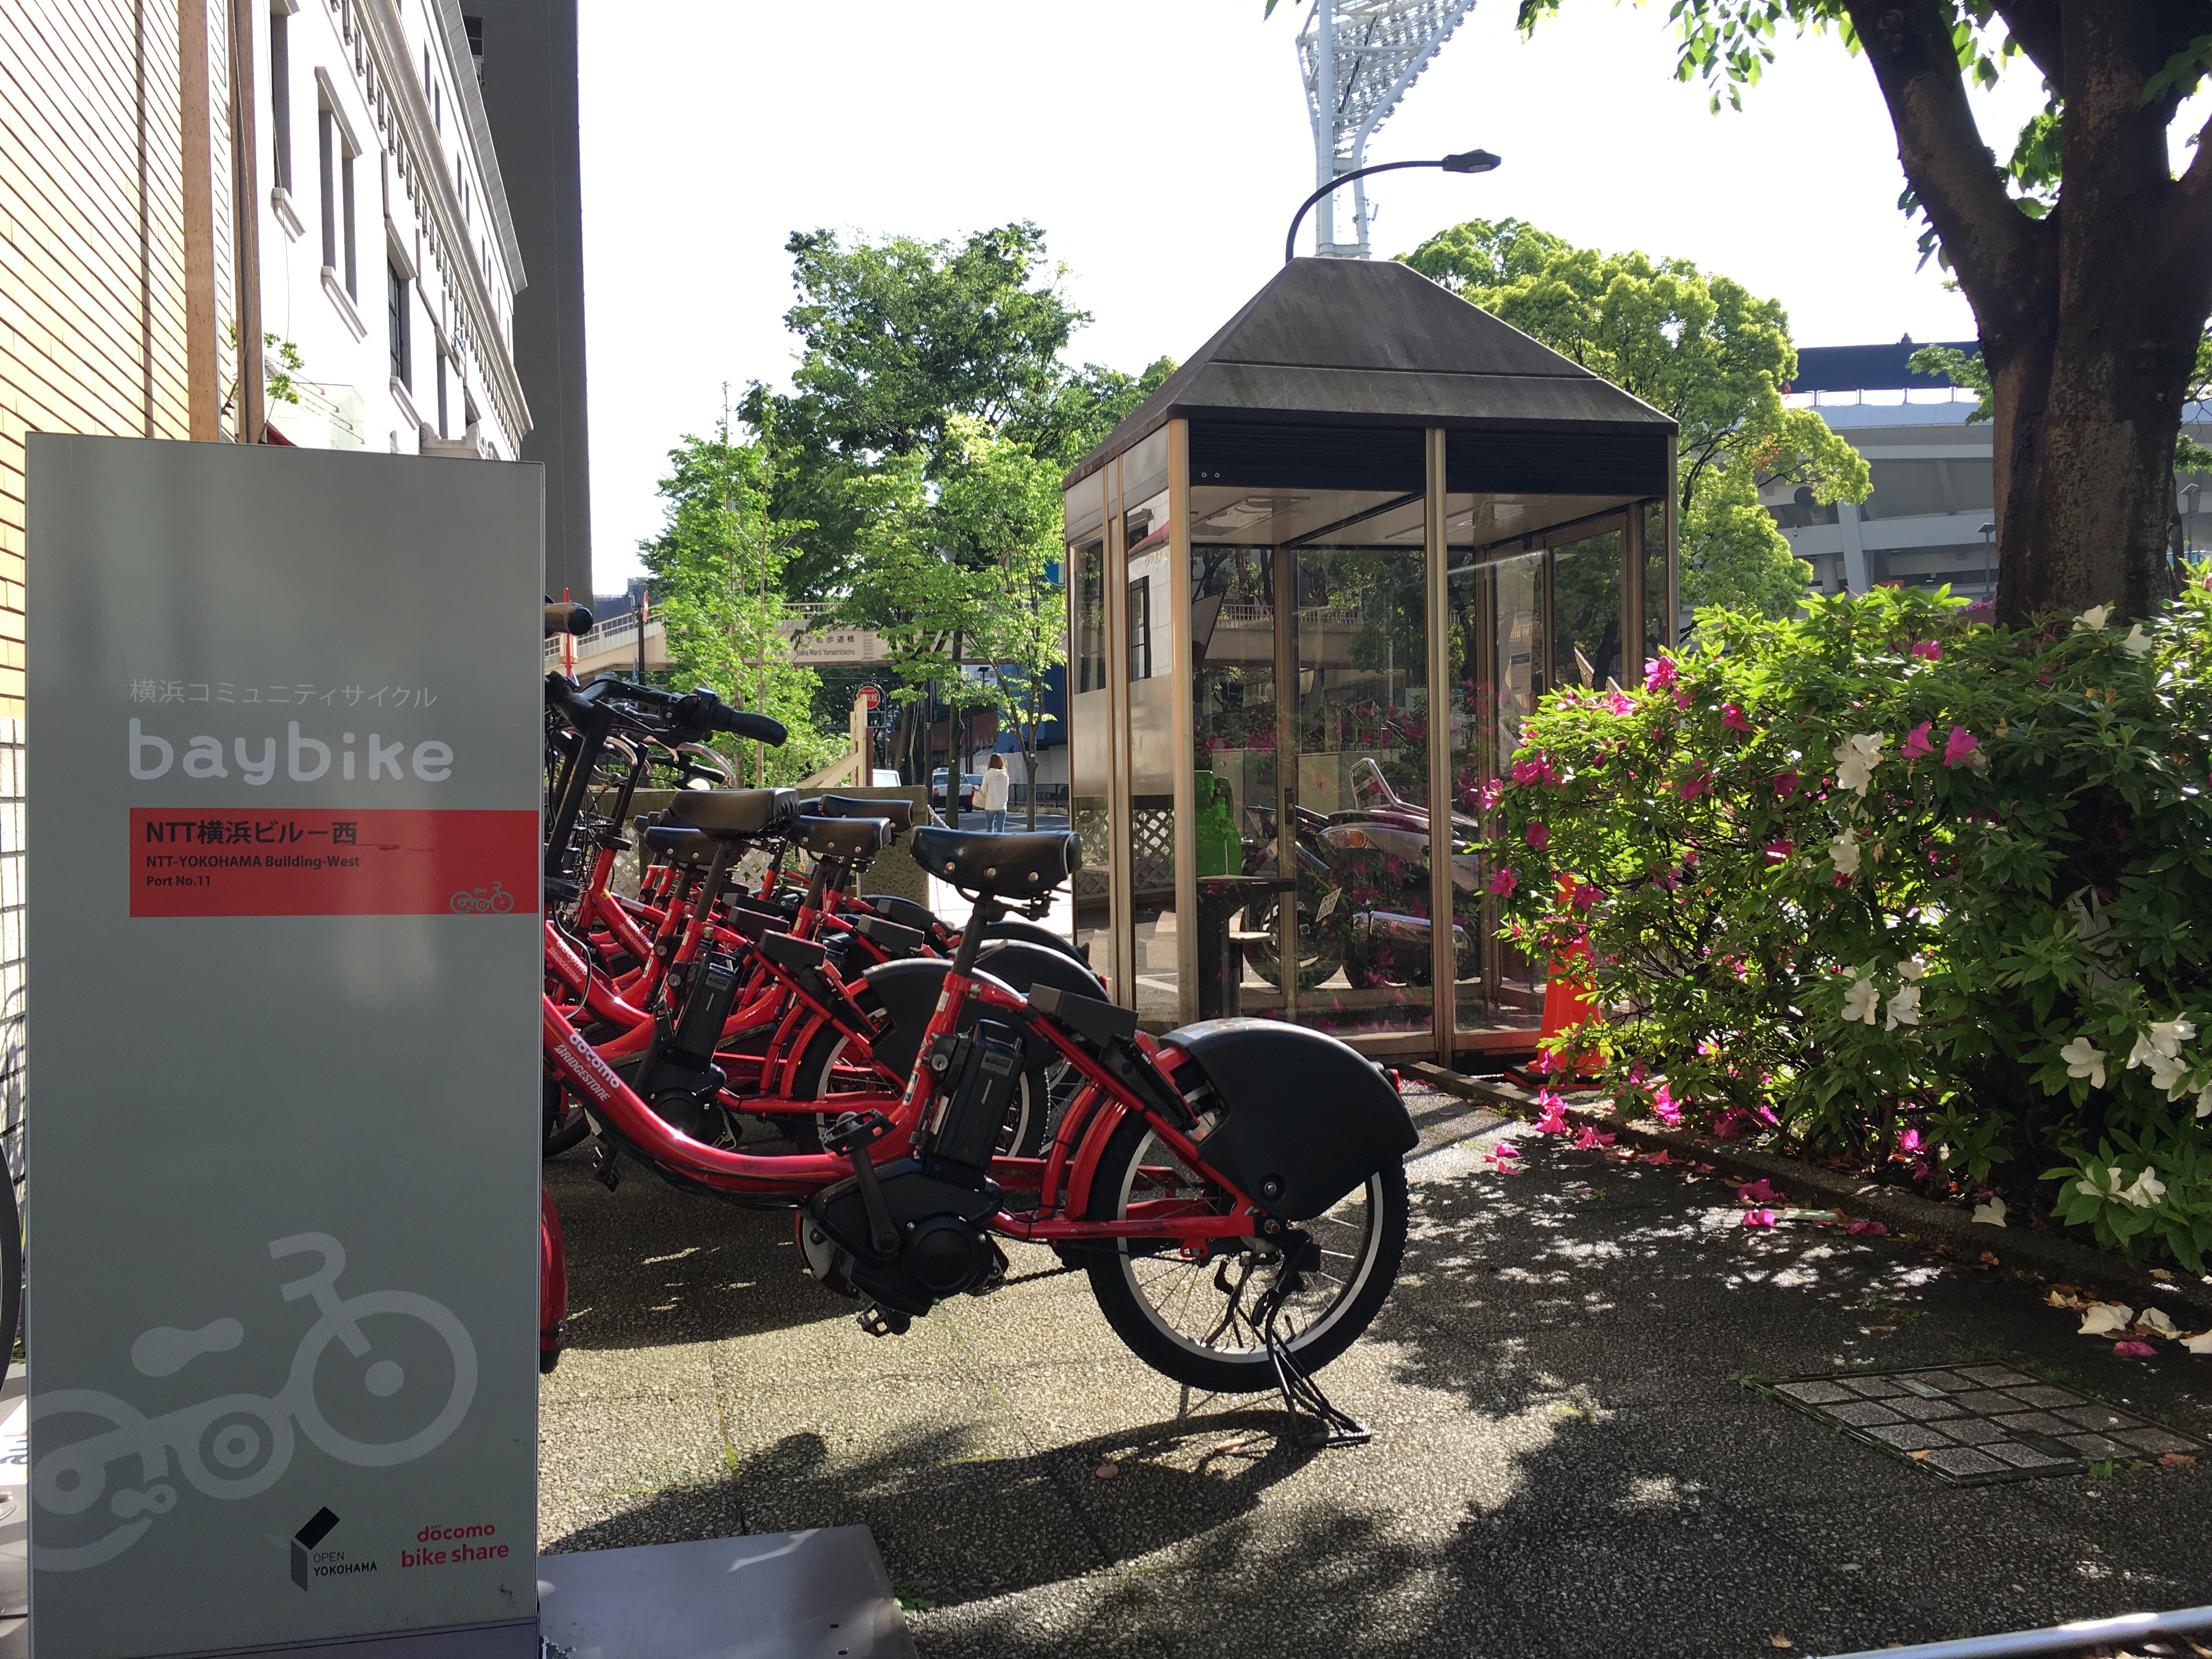 ベイバイクの利用方法 公式サイト 横浜セントラルホステル ゲストハウス 最低価格保証